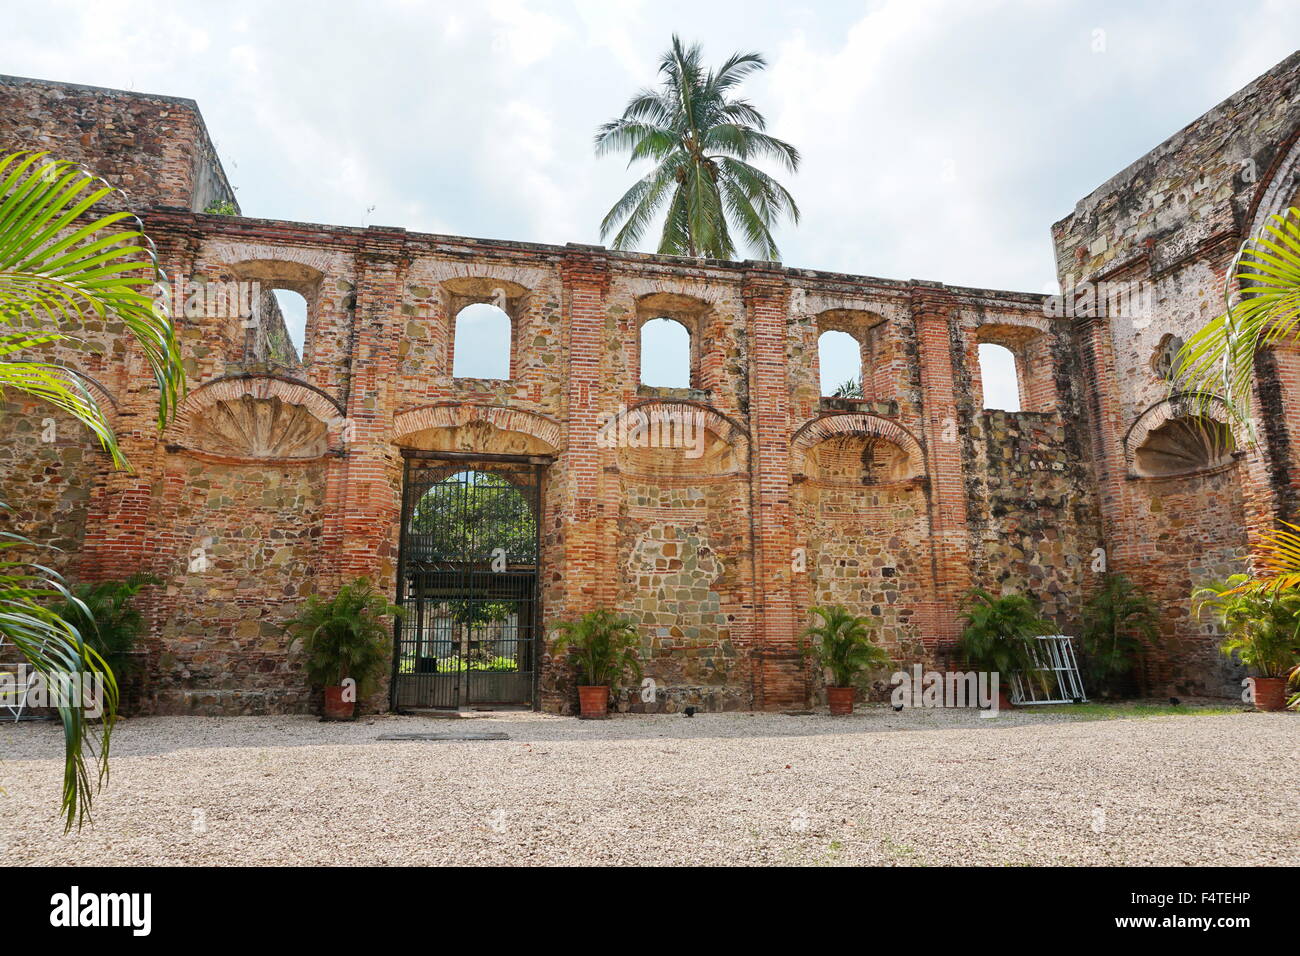 Ruine de l'église de la Compagnie de Jésus dans la vieille ville, le quartier historique de la ville de Panama, Panama, Amérique Centrale Banque D'Images